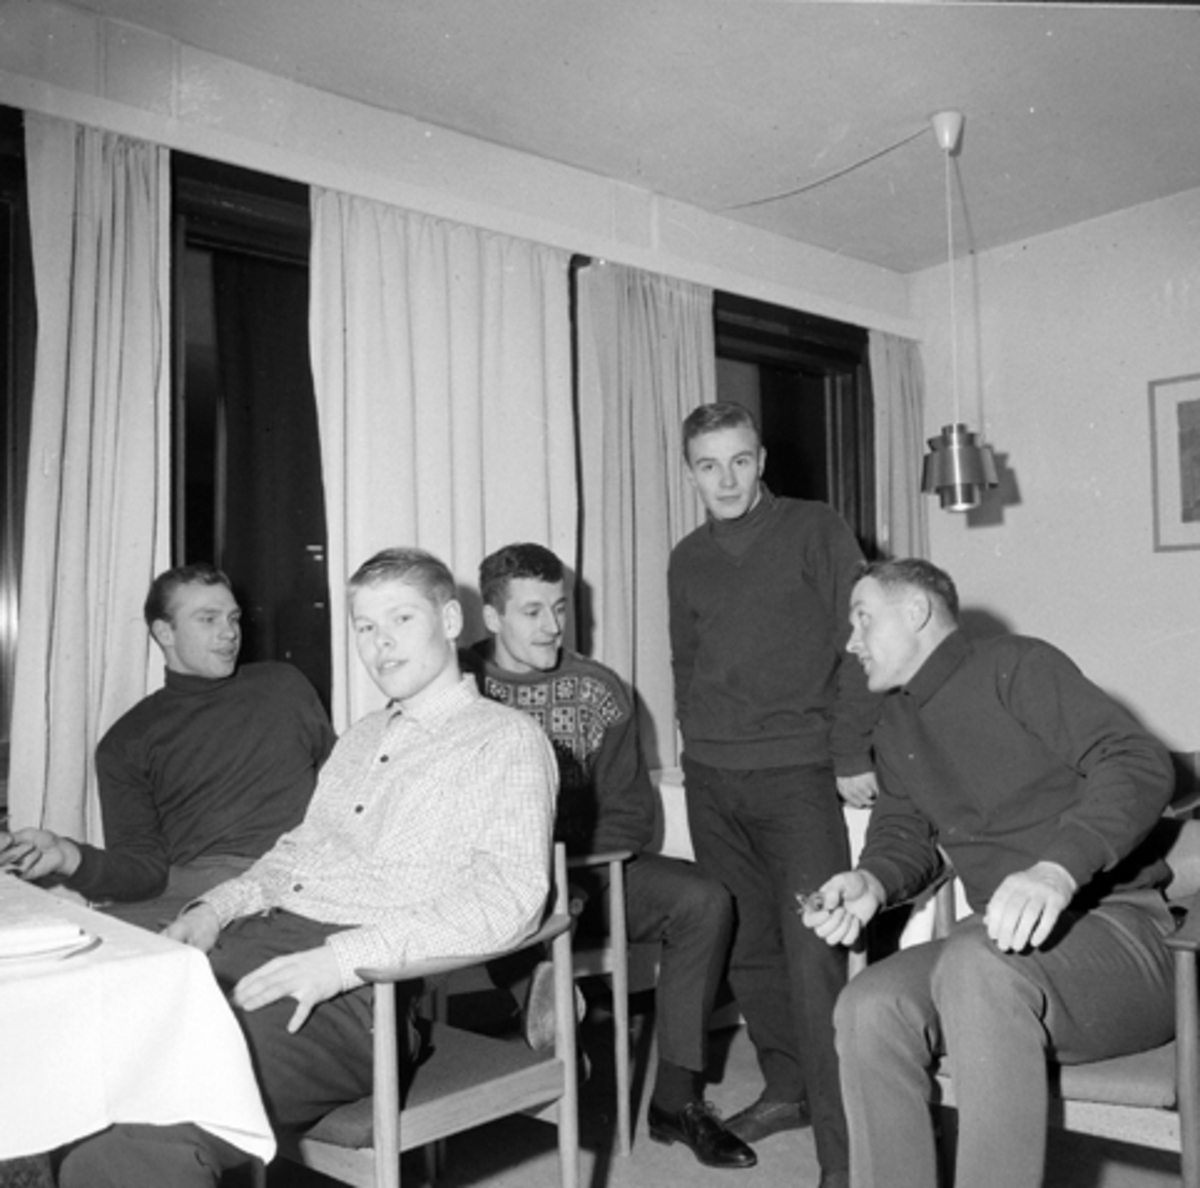 Skøyteløpere, f.v. Ivar Eriksen, Per Ivar Moe, Fred Anton Maier, Willy Guttormsen, trener Berg